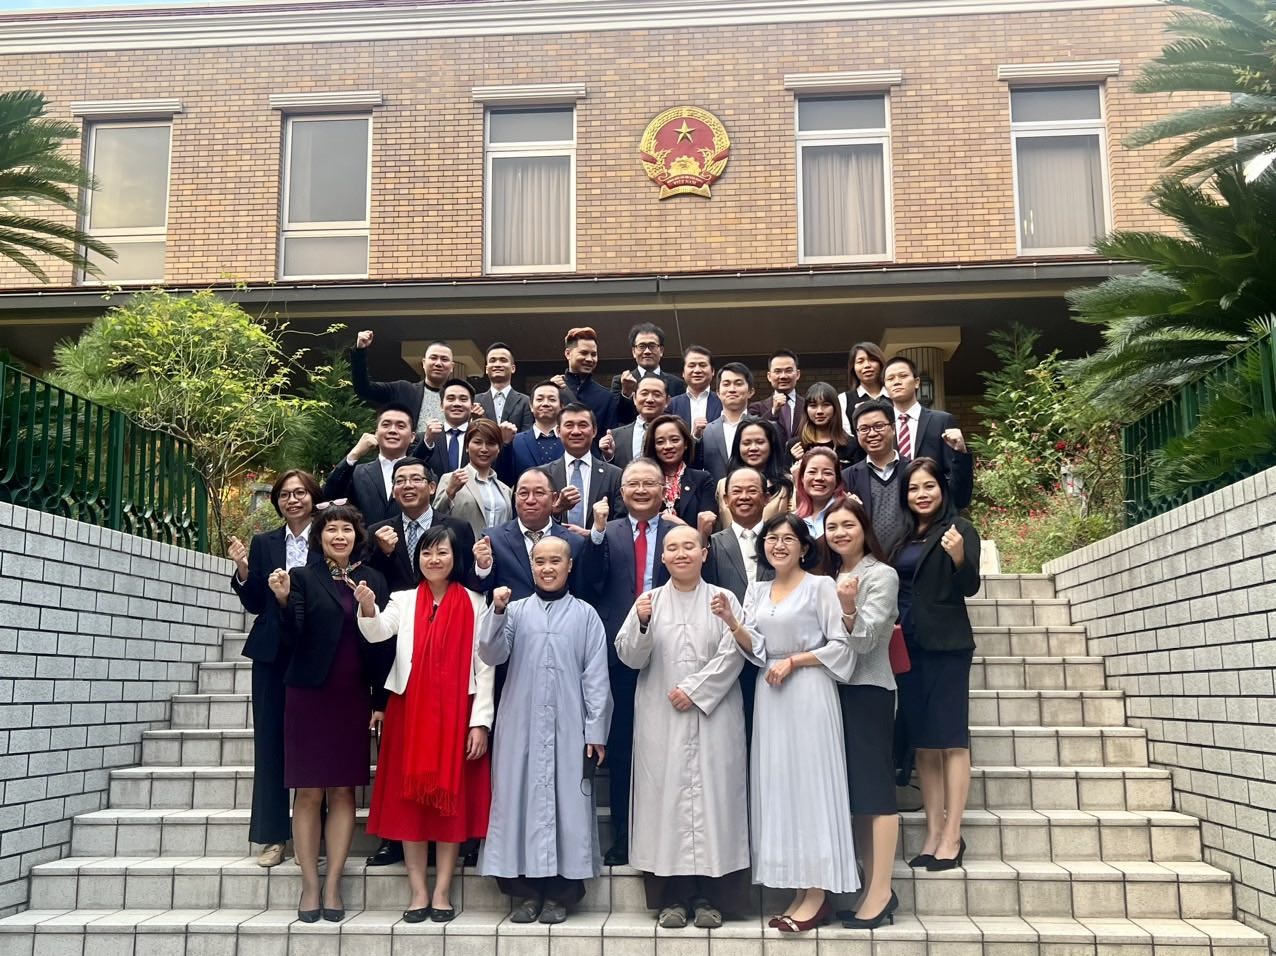 Đoàn Ủy ban Nhà nước về người Việt Nam ở nước ngoài gặp gỡ đại diện các Hội, đoàn người Việt tại Nhật Bản